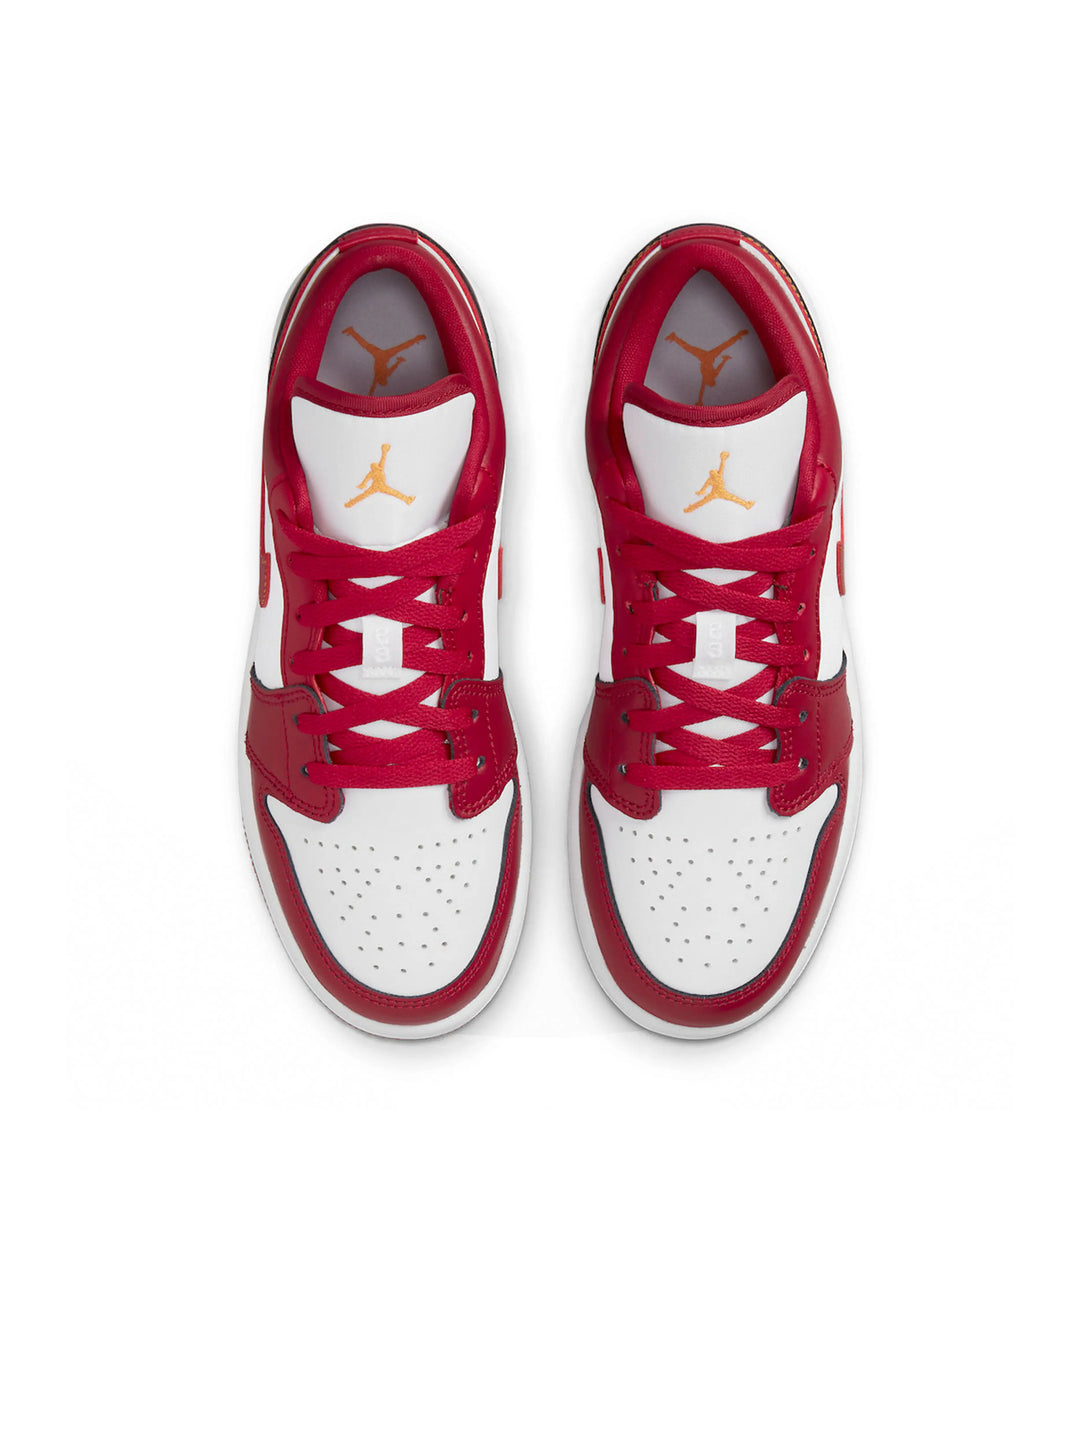 Nike Air Jordan 1 Low Cardinal Red (GS) Prior